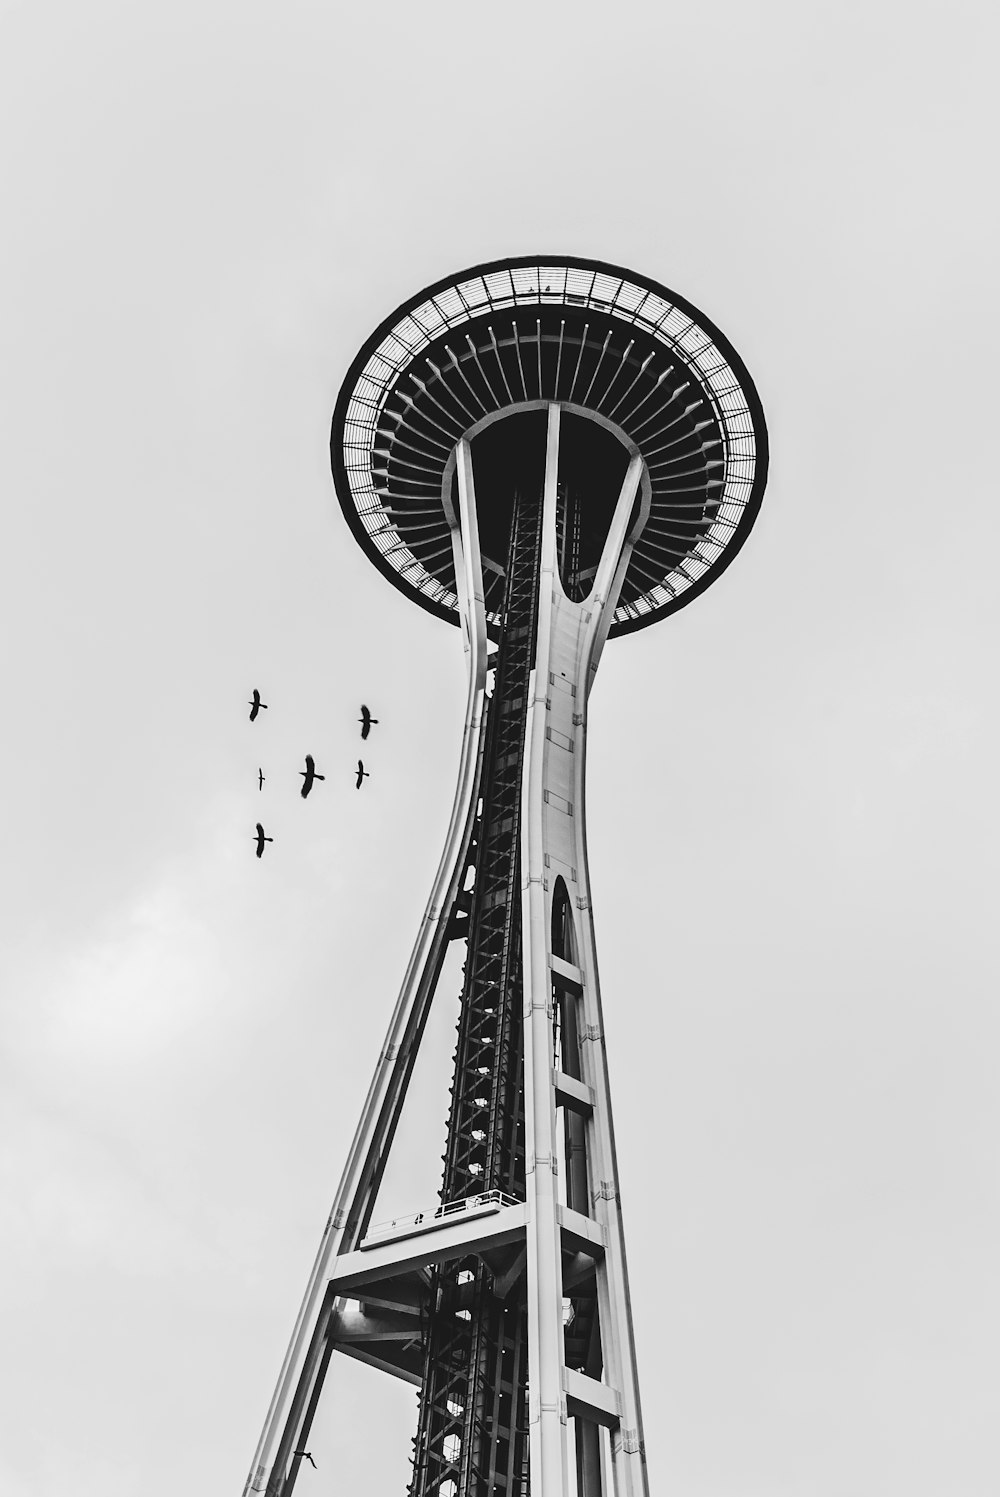 탑 위로 날아가는 새의 그레이스케일 사진